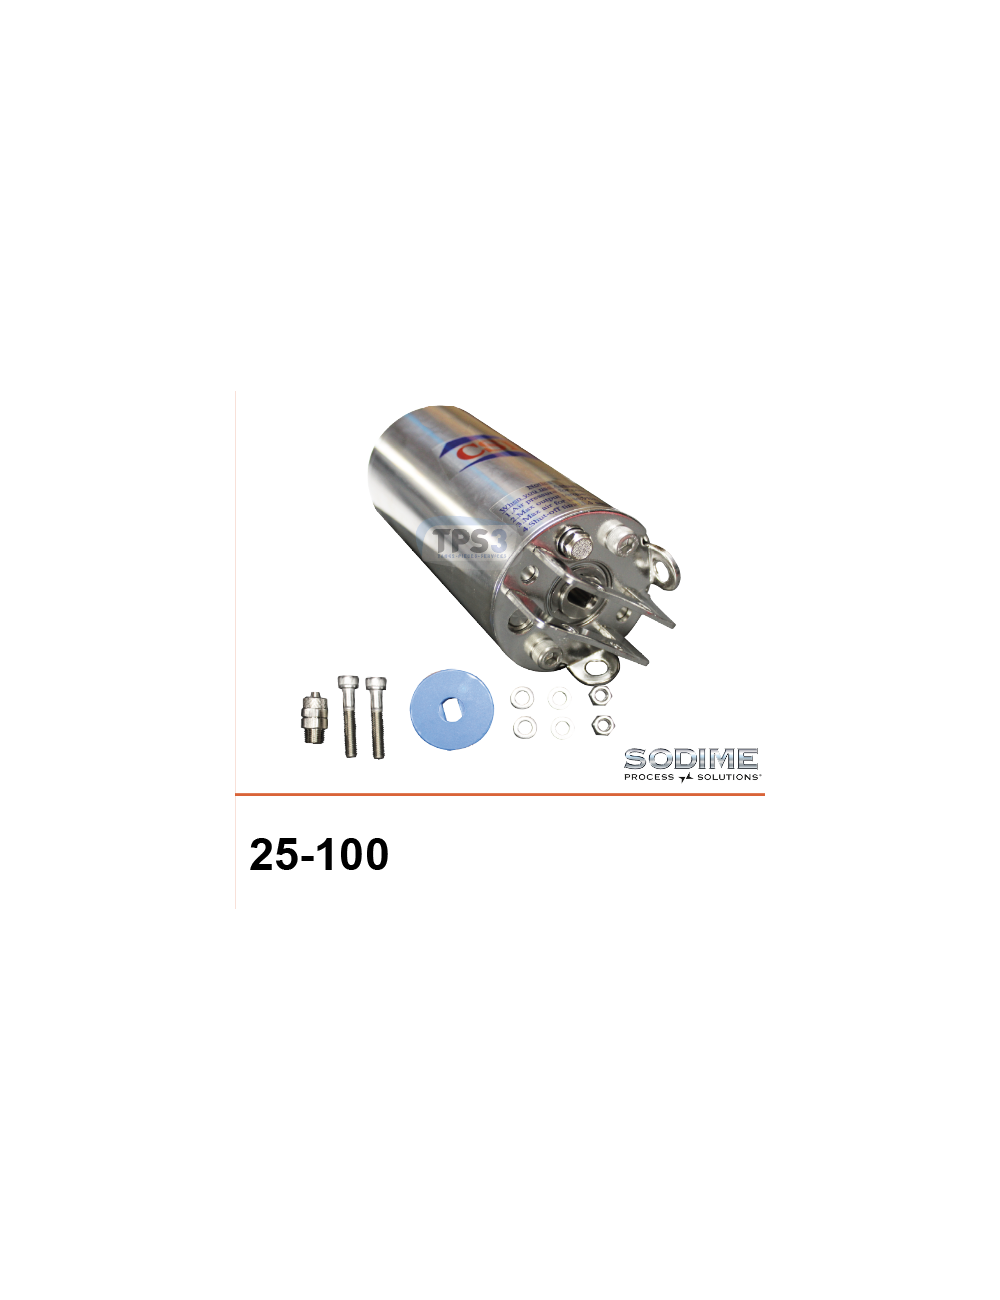 Opérateur pneumatique simple effet Sodime 25-100